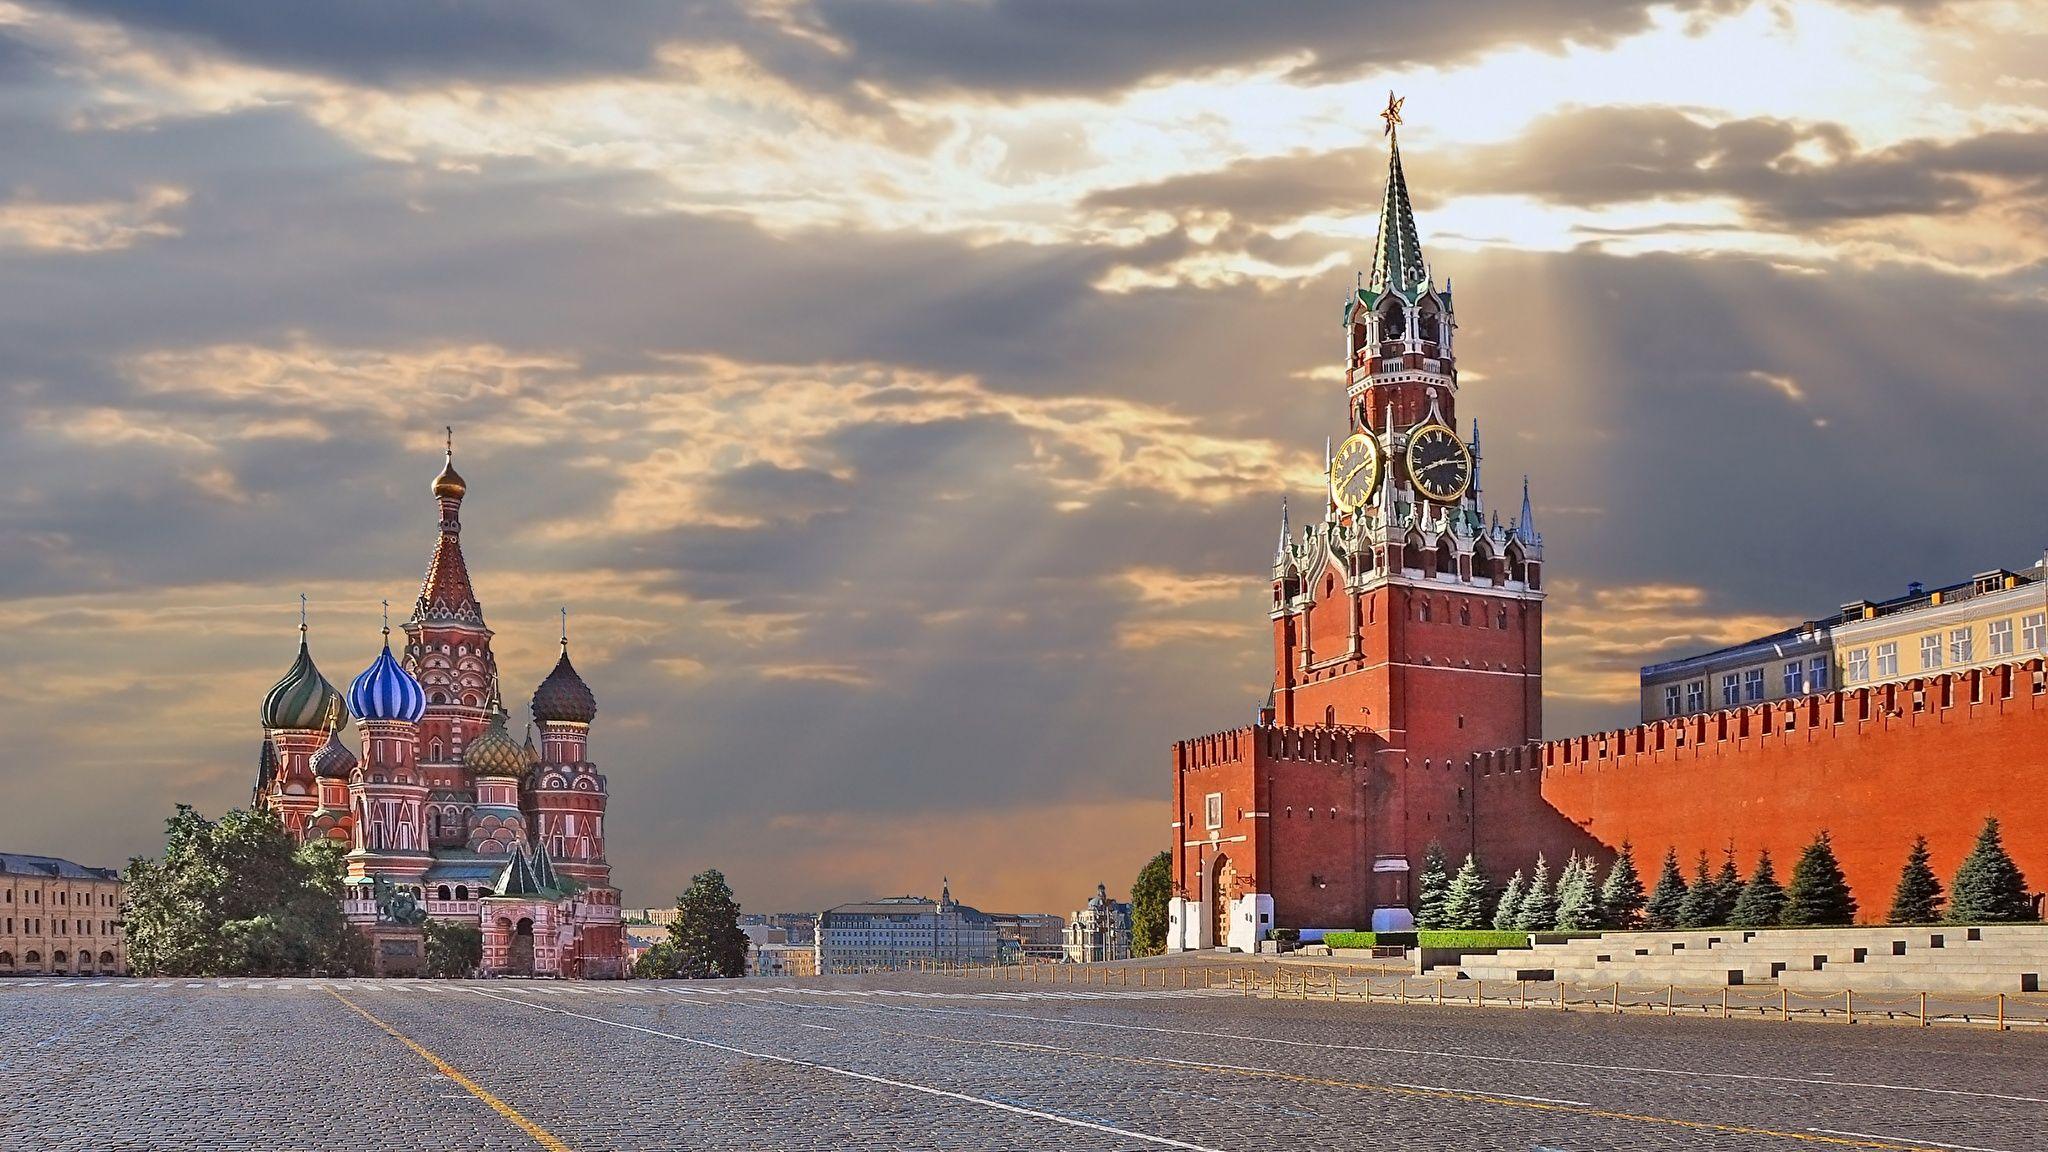 Московский кремль картинка раскрасить